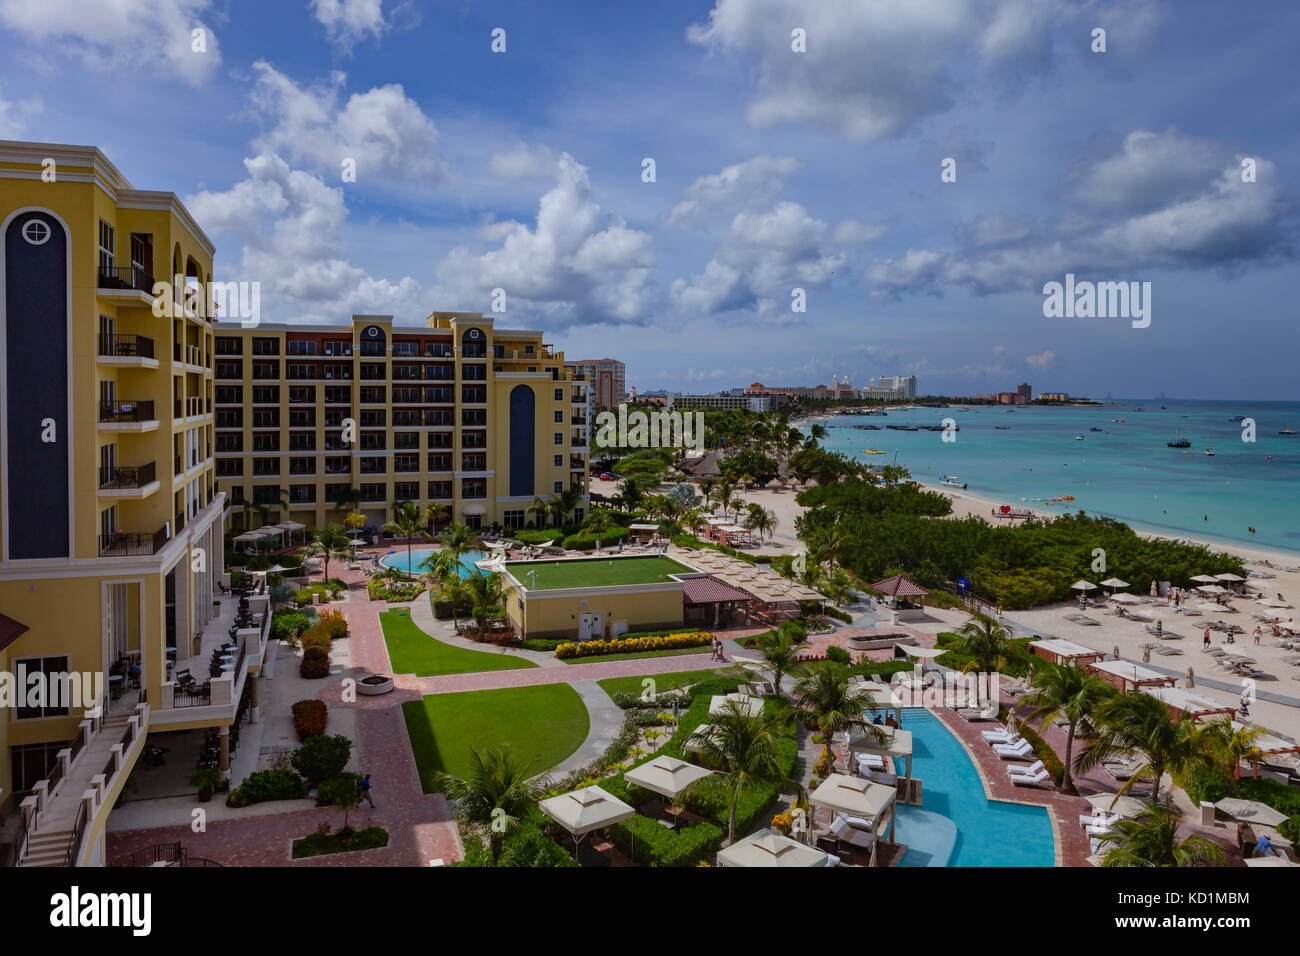 Palm Beach, Aruba - 13 settembre 2017: la popolare località turistica di Palm Beach di aruba a sud il mare dei caraibi. diversi alberghi e imbarcazioni al anch Foto Stock